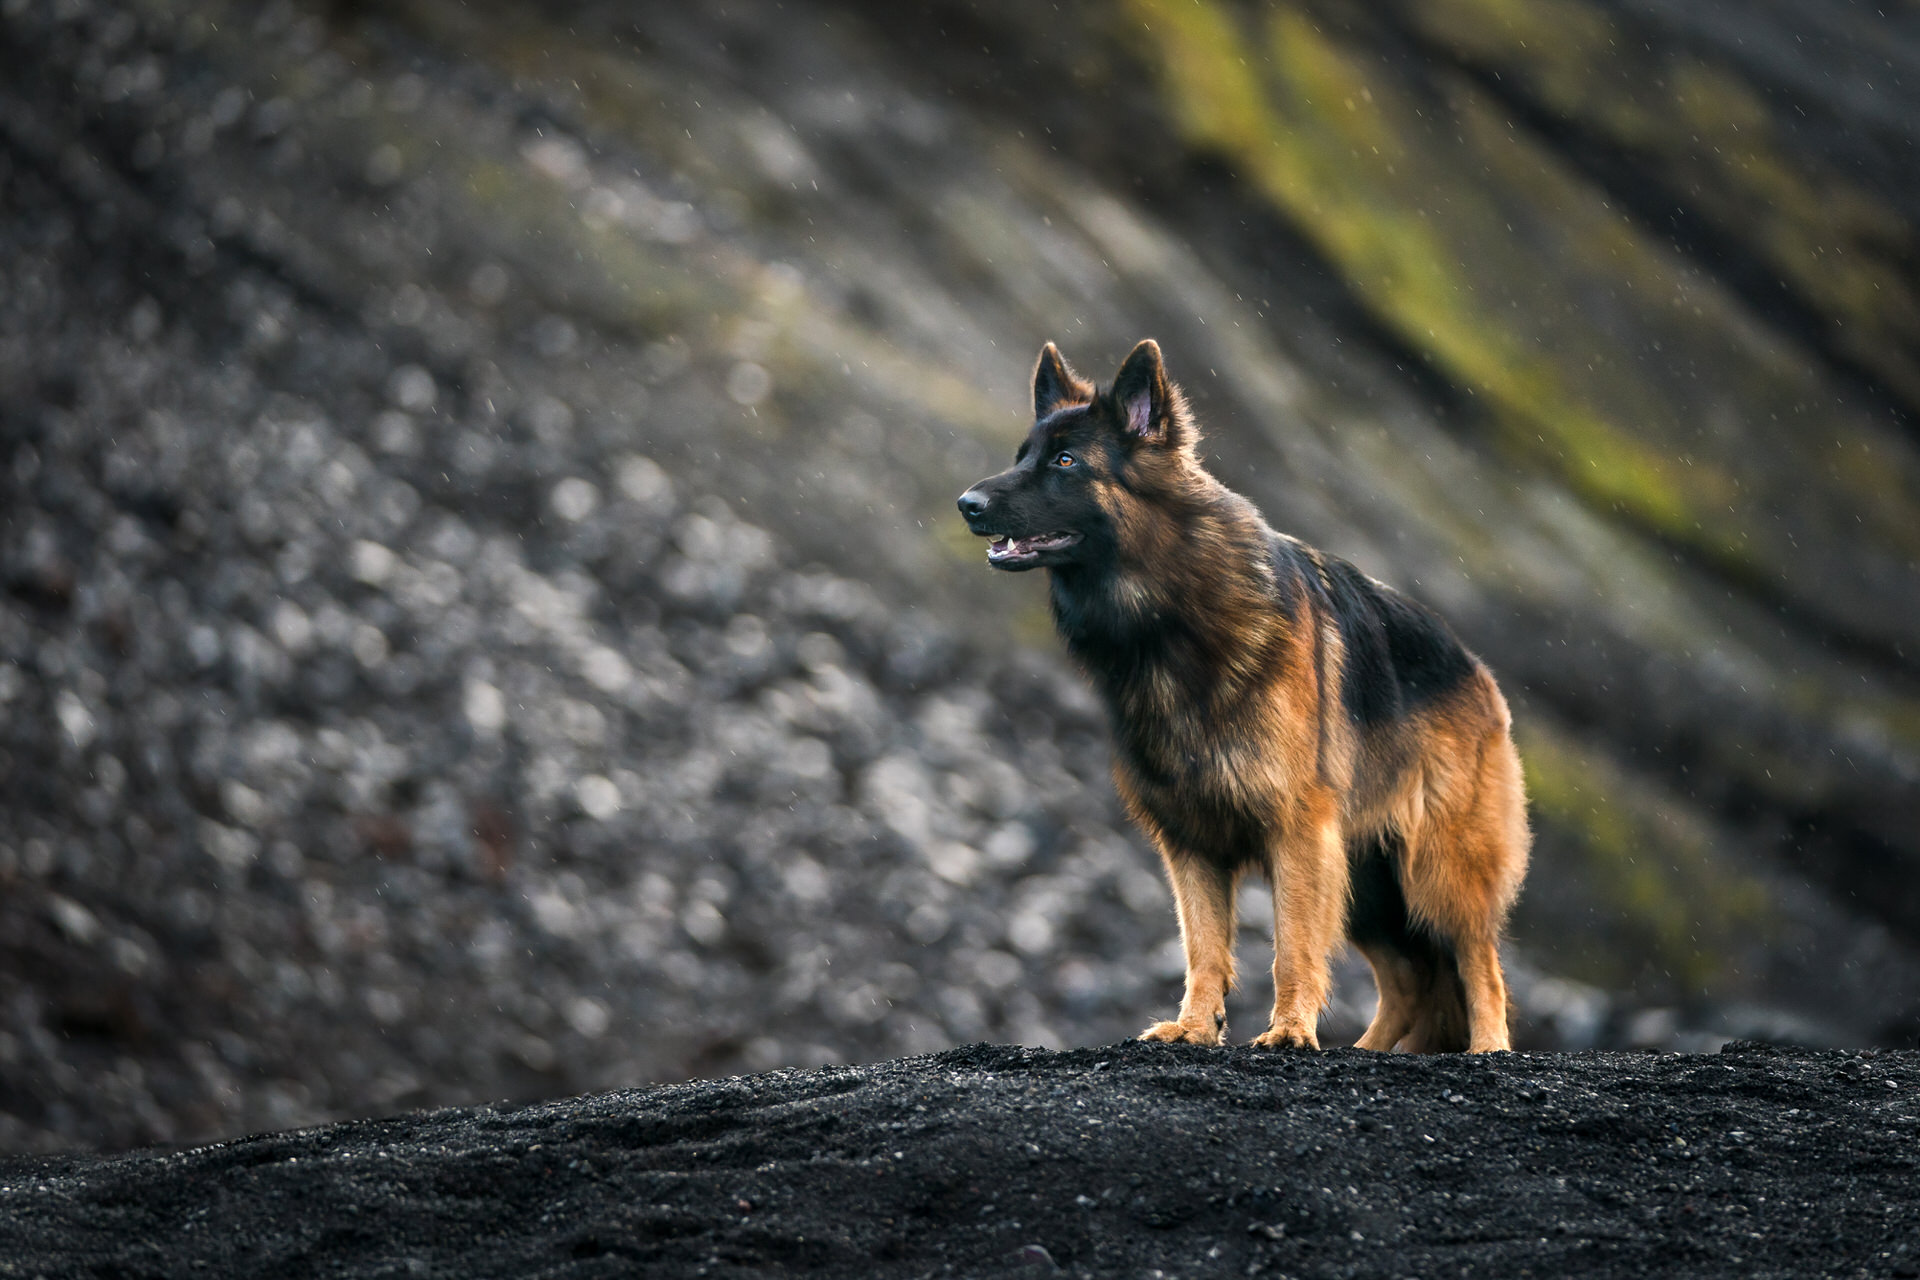 Alert German Shepherd outdoors on rocky terrain in Iceland.